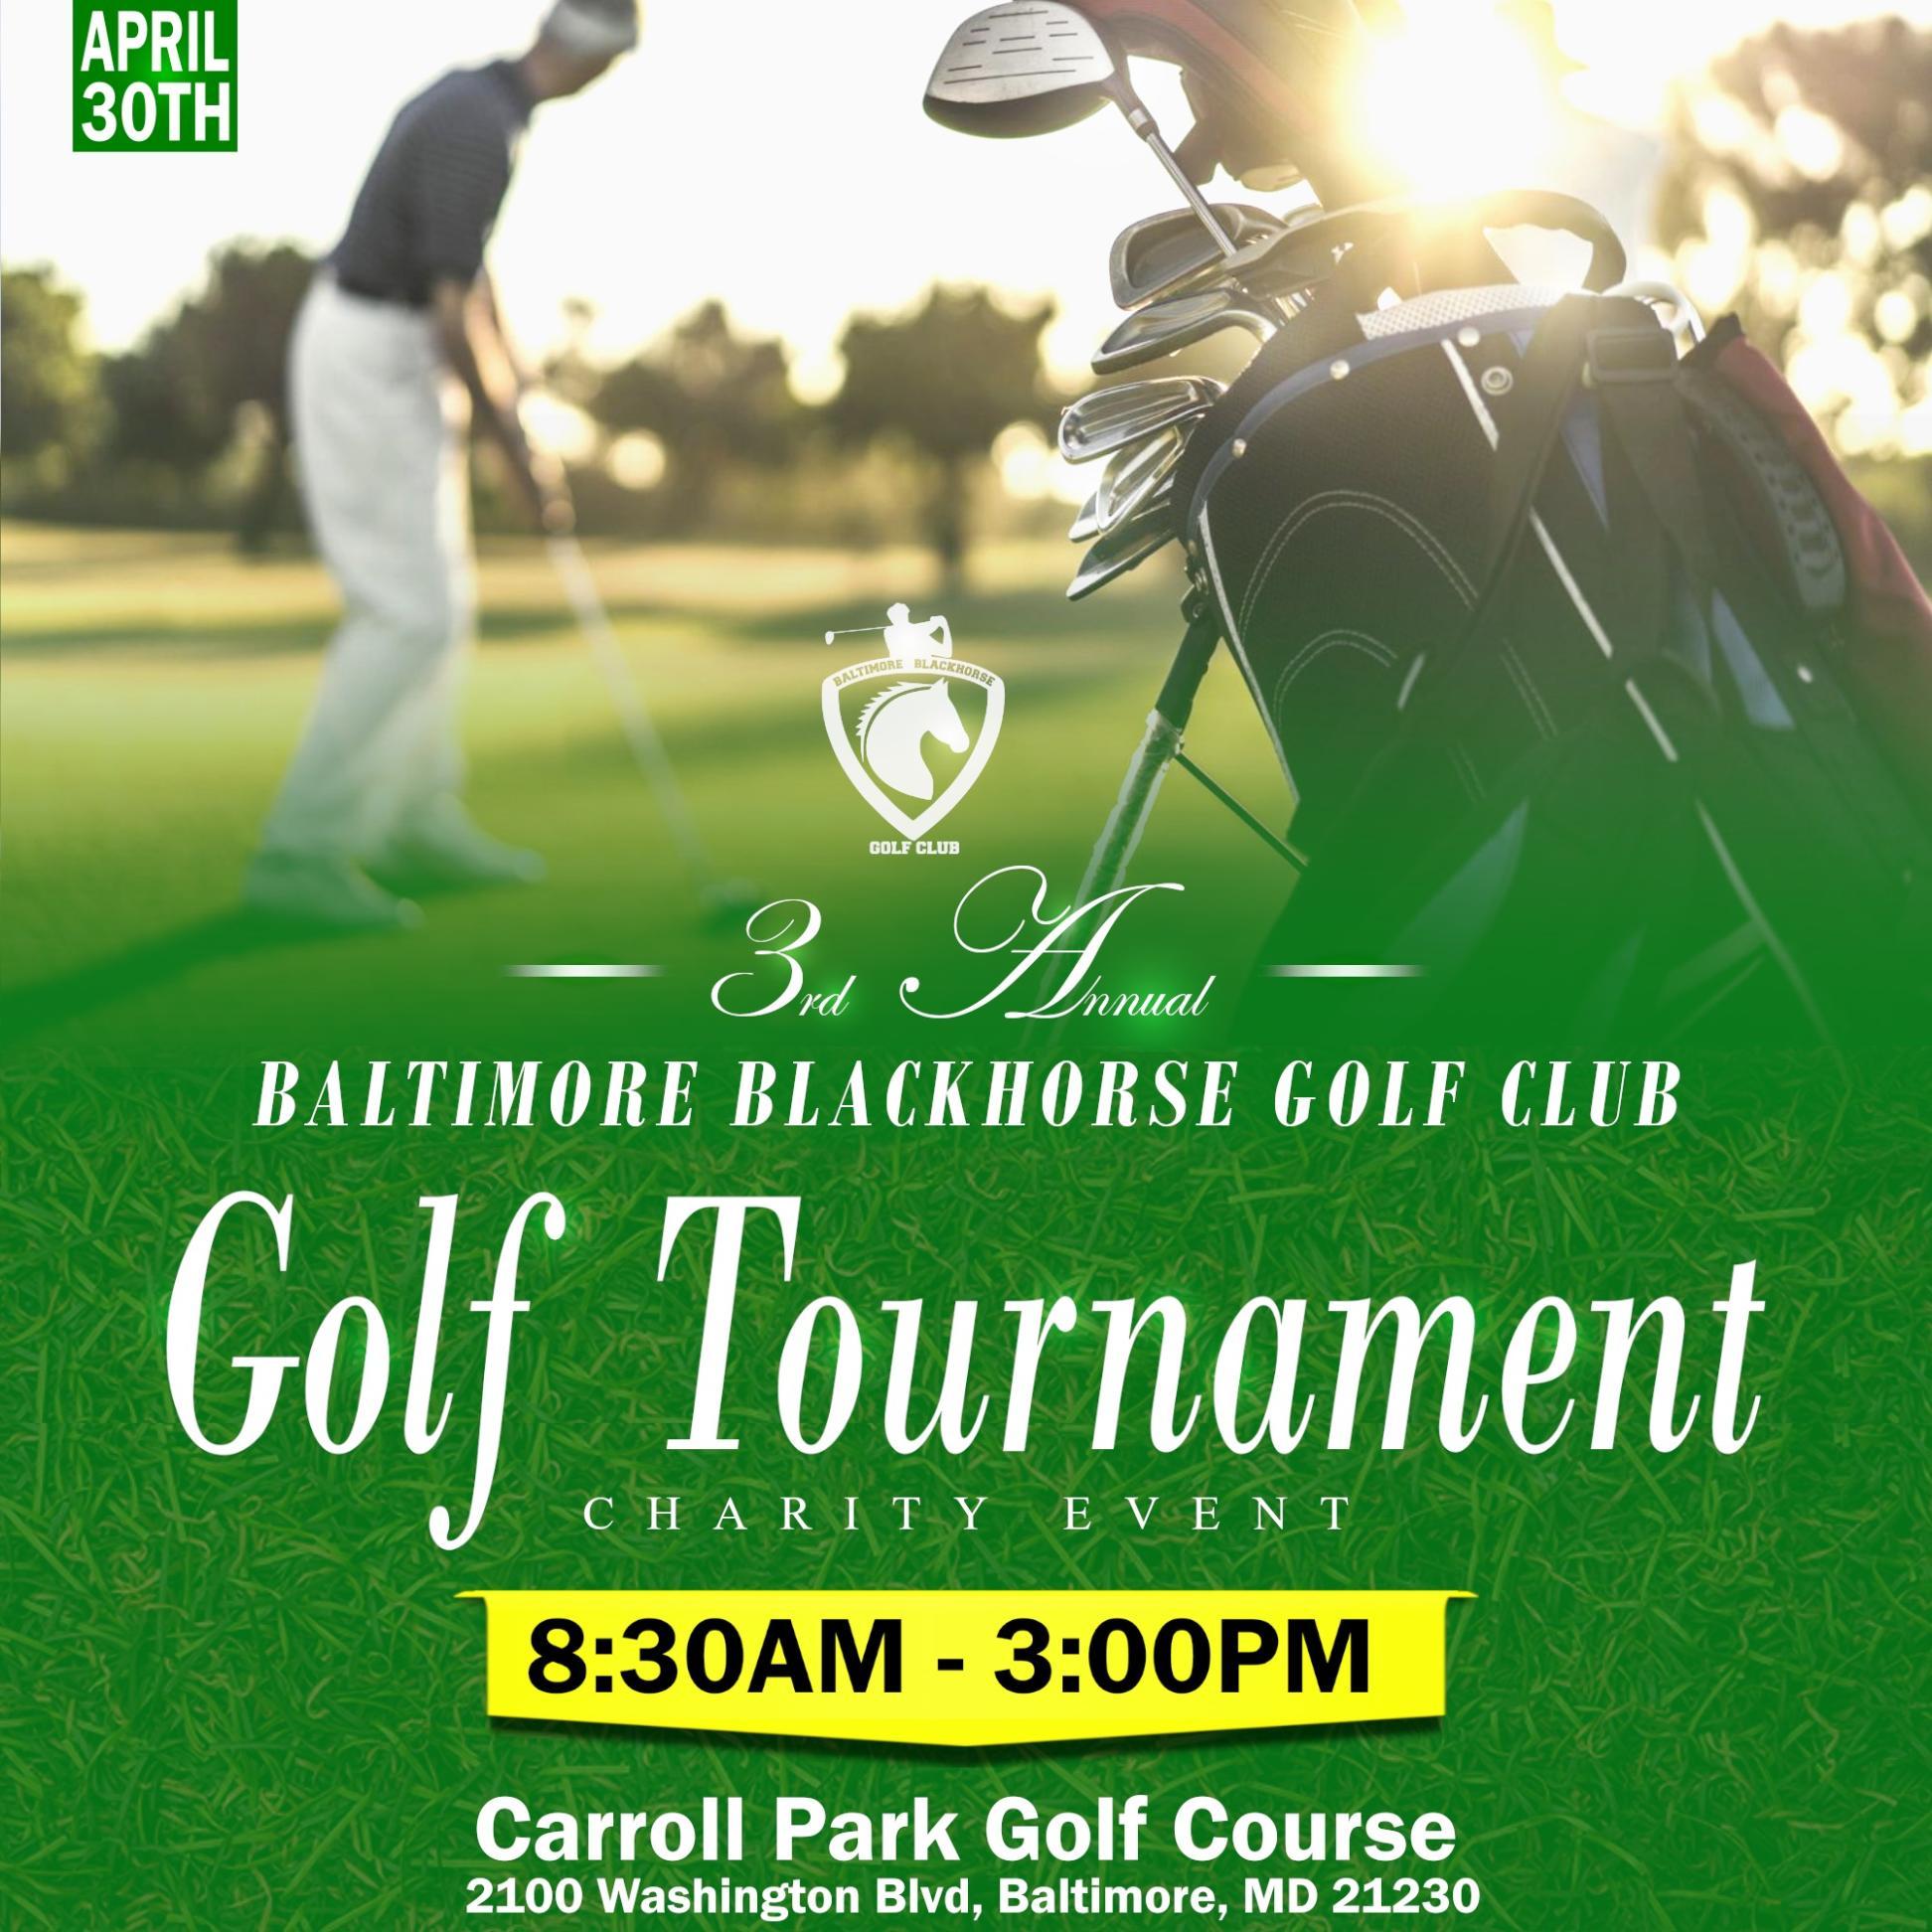 4TH ANNUAL Baltimore Blackhorse Golf Club Charity